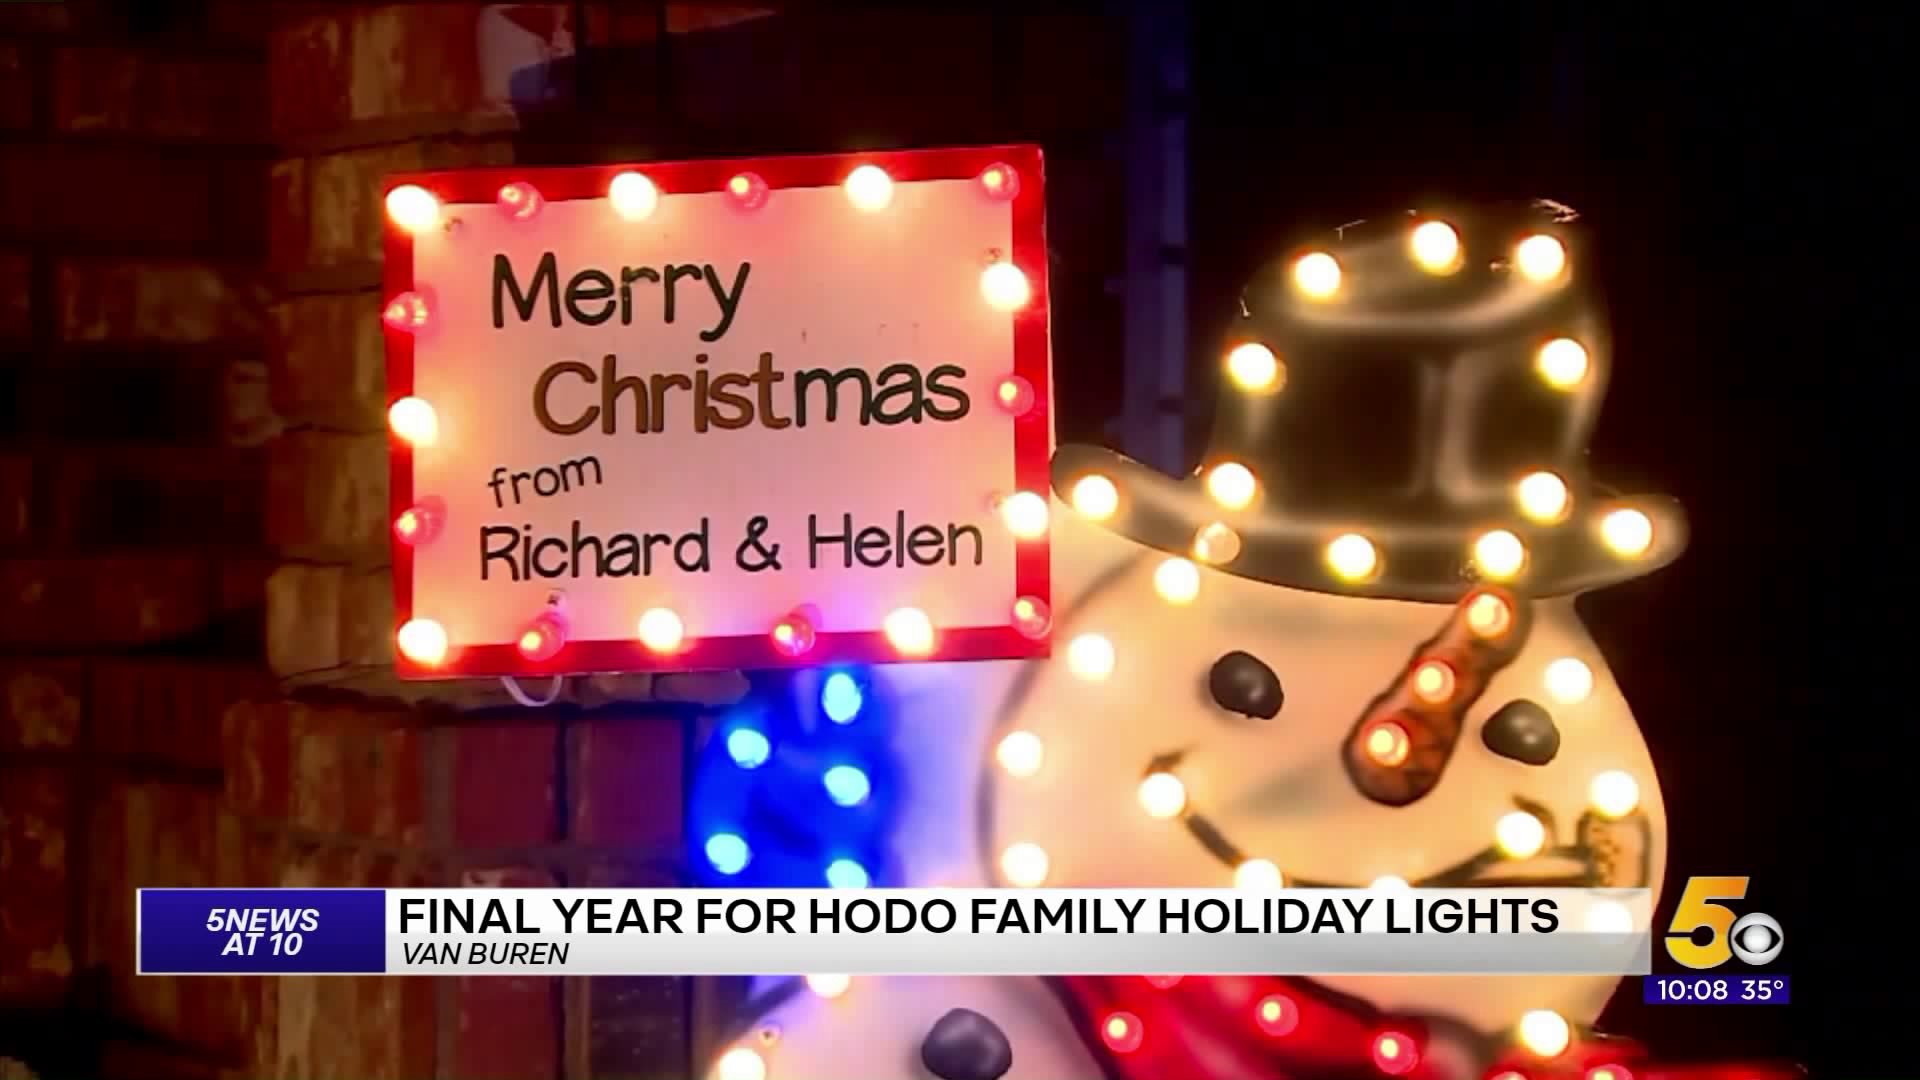 Final Year For Hodo Family Christmas Lights In Van Buren